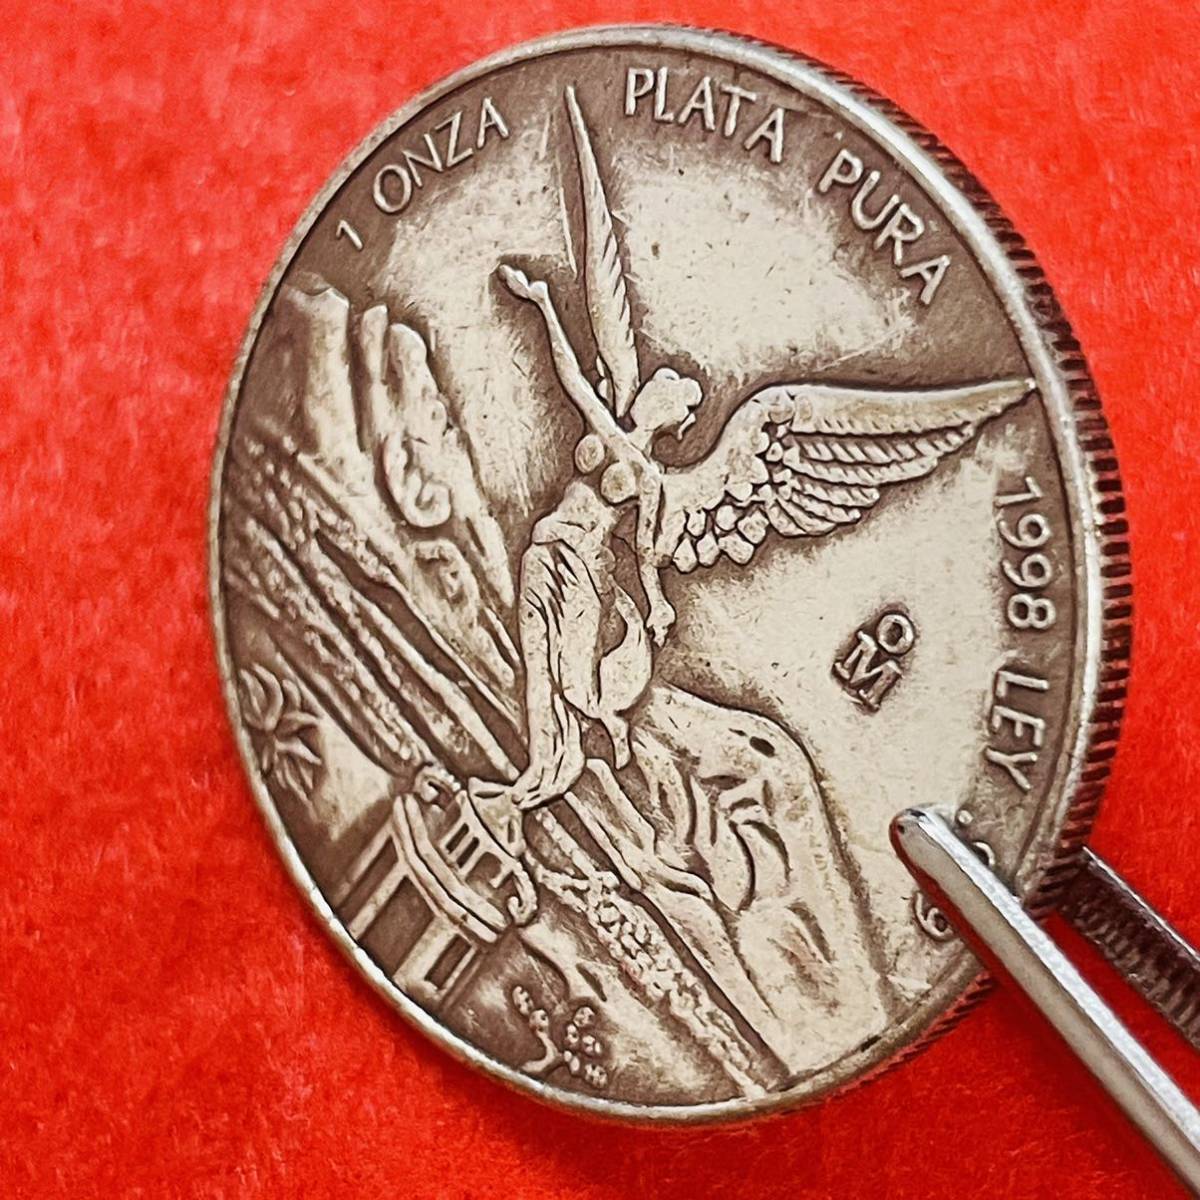 メキシコ 硬貨 古銭 1998年 翼のある女神 「メキシコ合衆国」銘 ポポカテペトル火山 イスタクシウアトル火山 記念幣 コイン 重さ26.53g_画像3